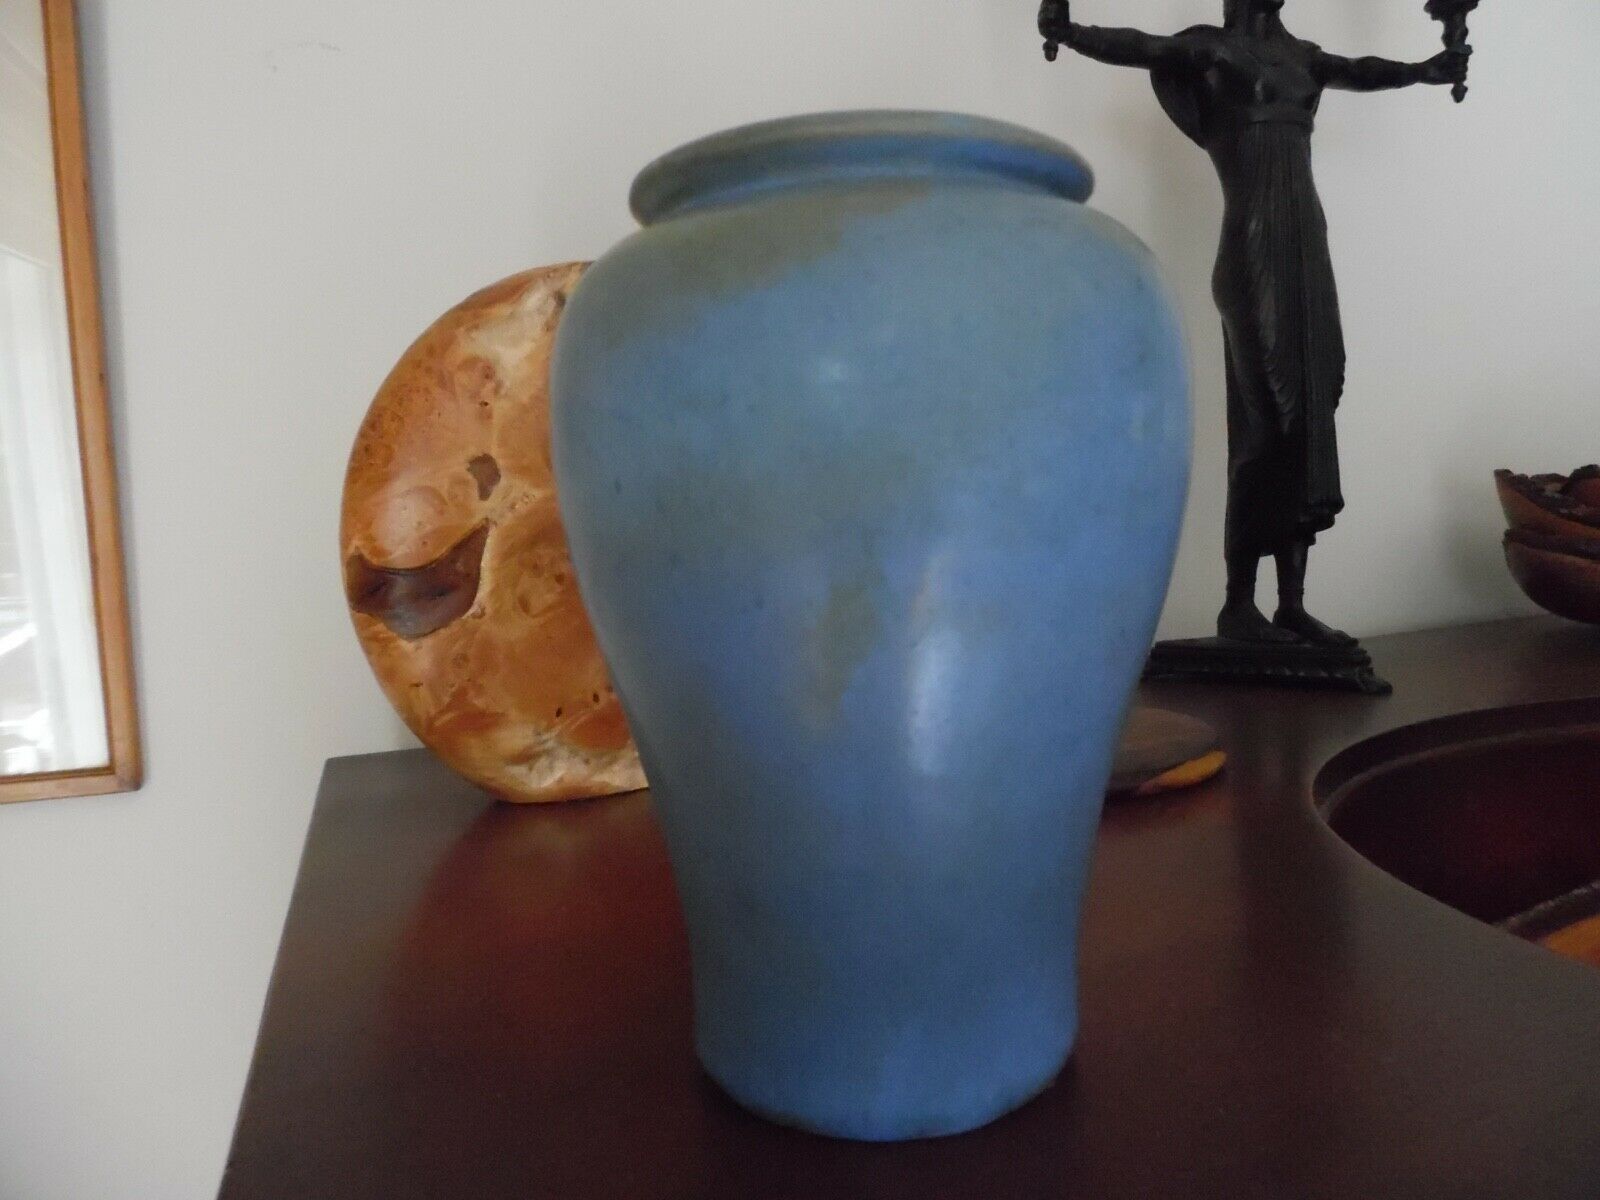 Fulper Art Pottery Vase